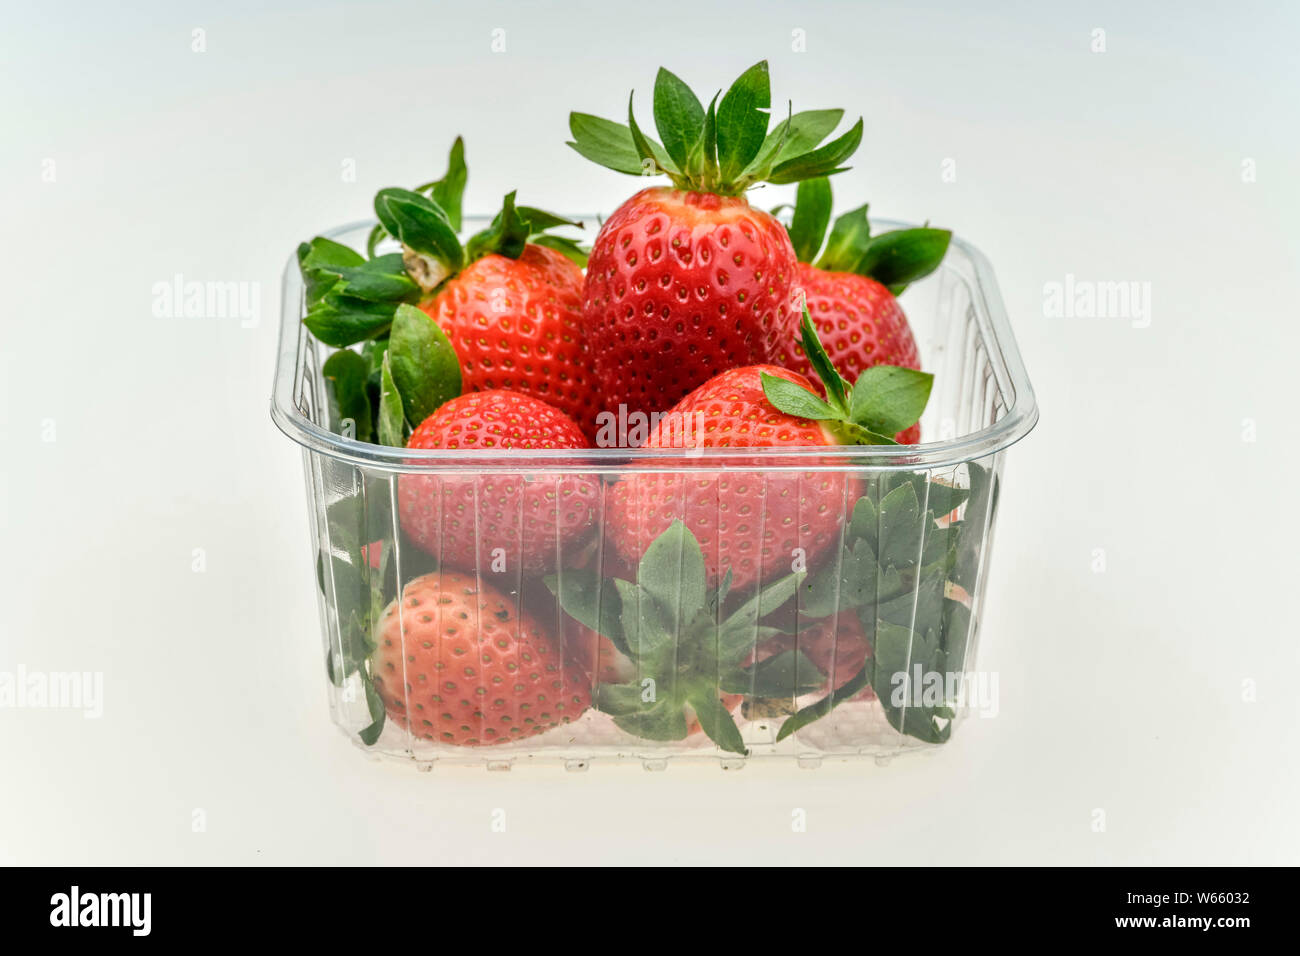 strawberries, Fragaria x ananassa Stock Photo